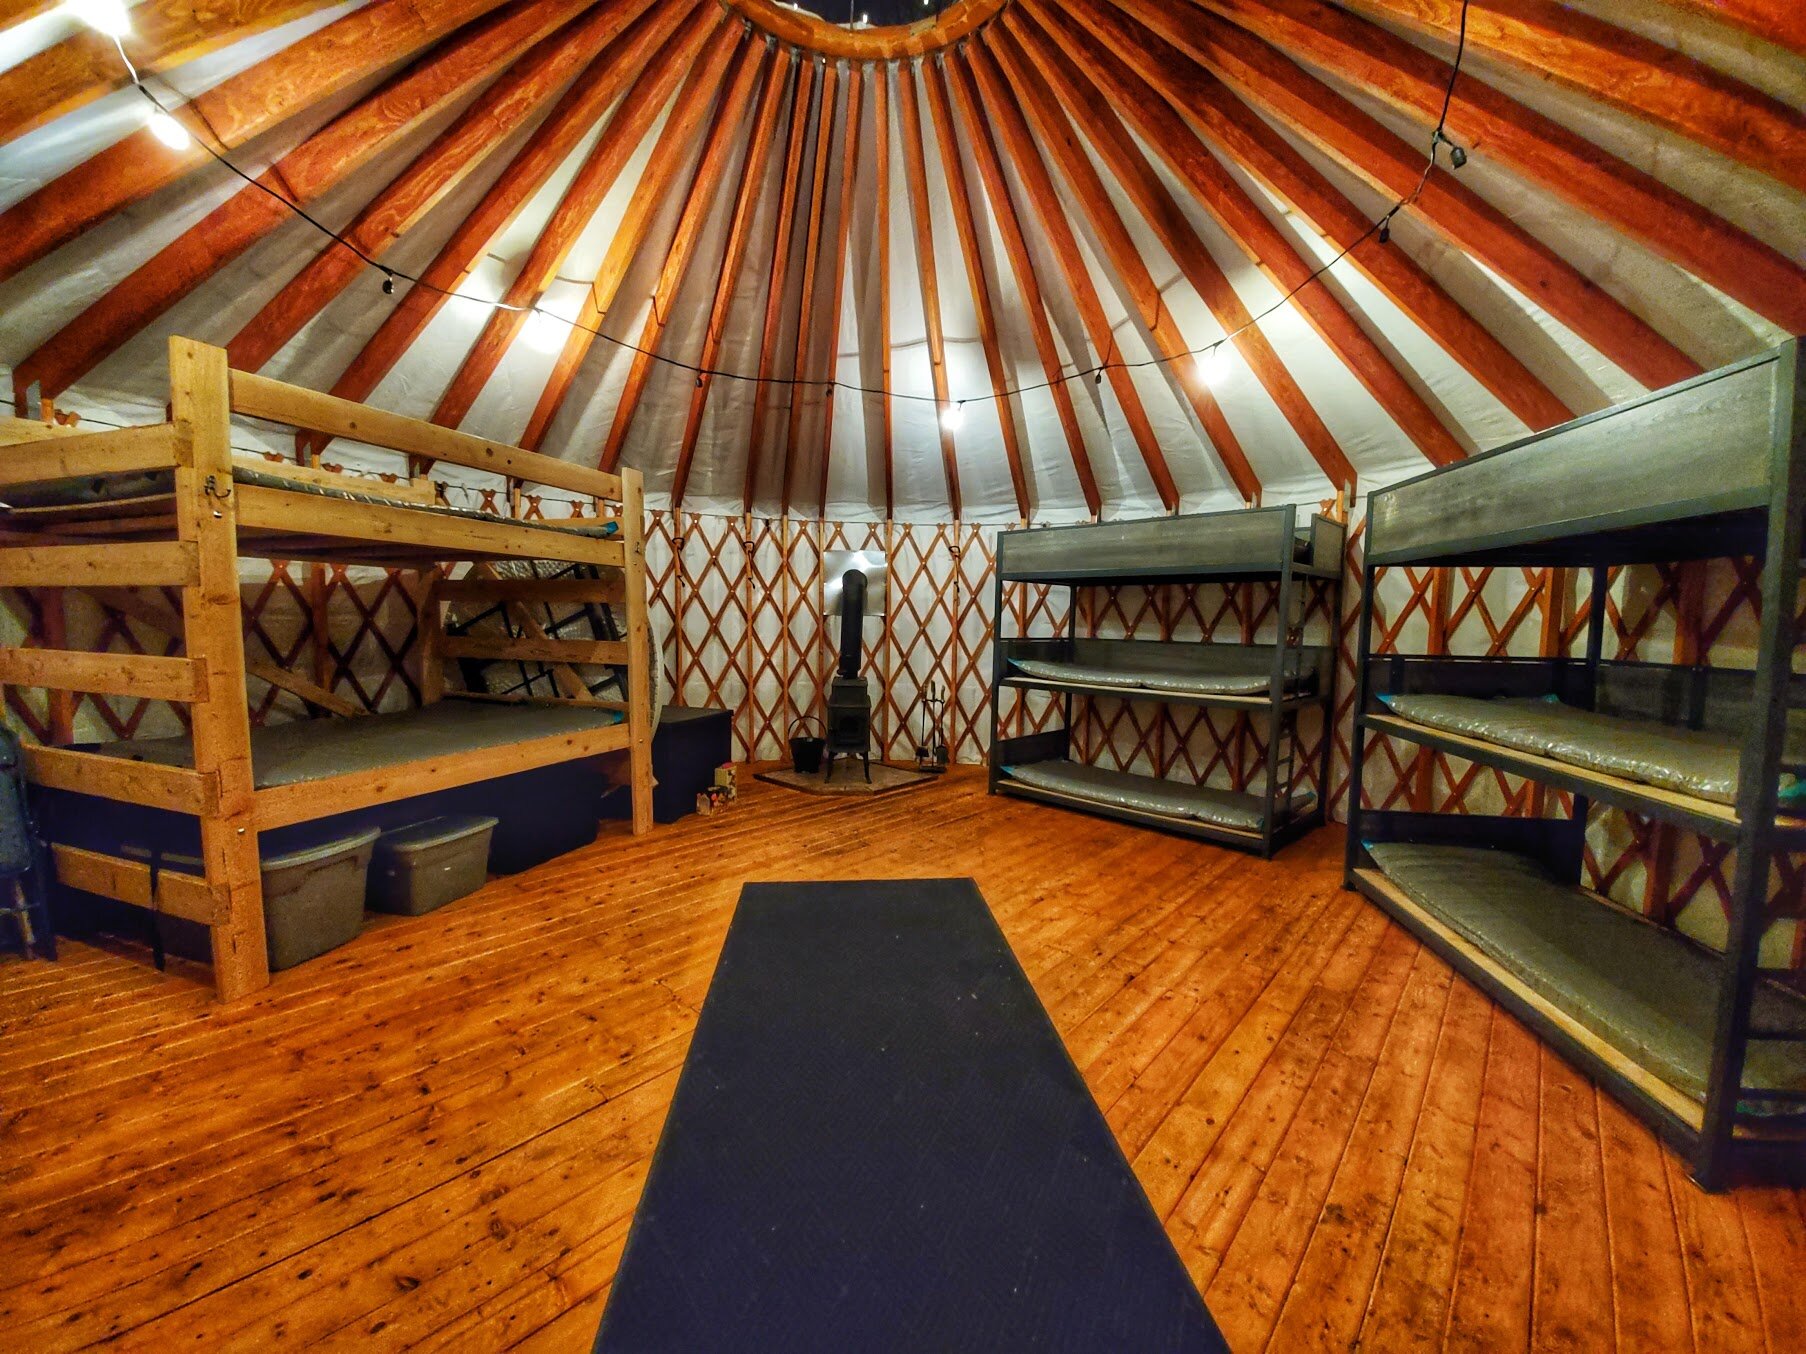 inside yurt beds.jpeg